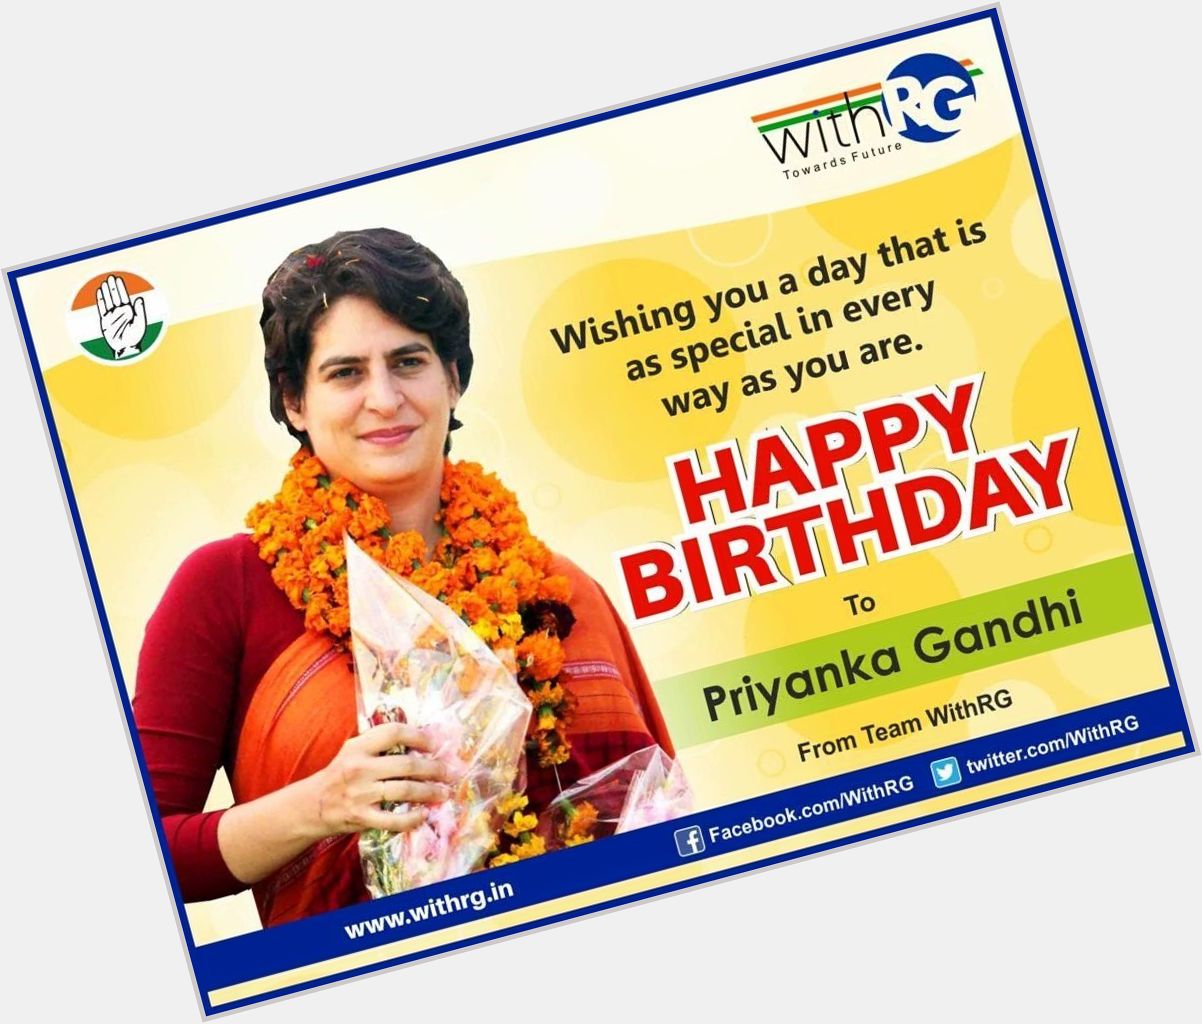 Happy birthday to Priyanka Gandhi ji.  